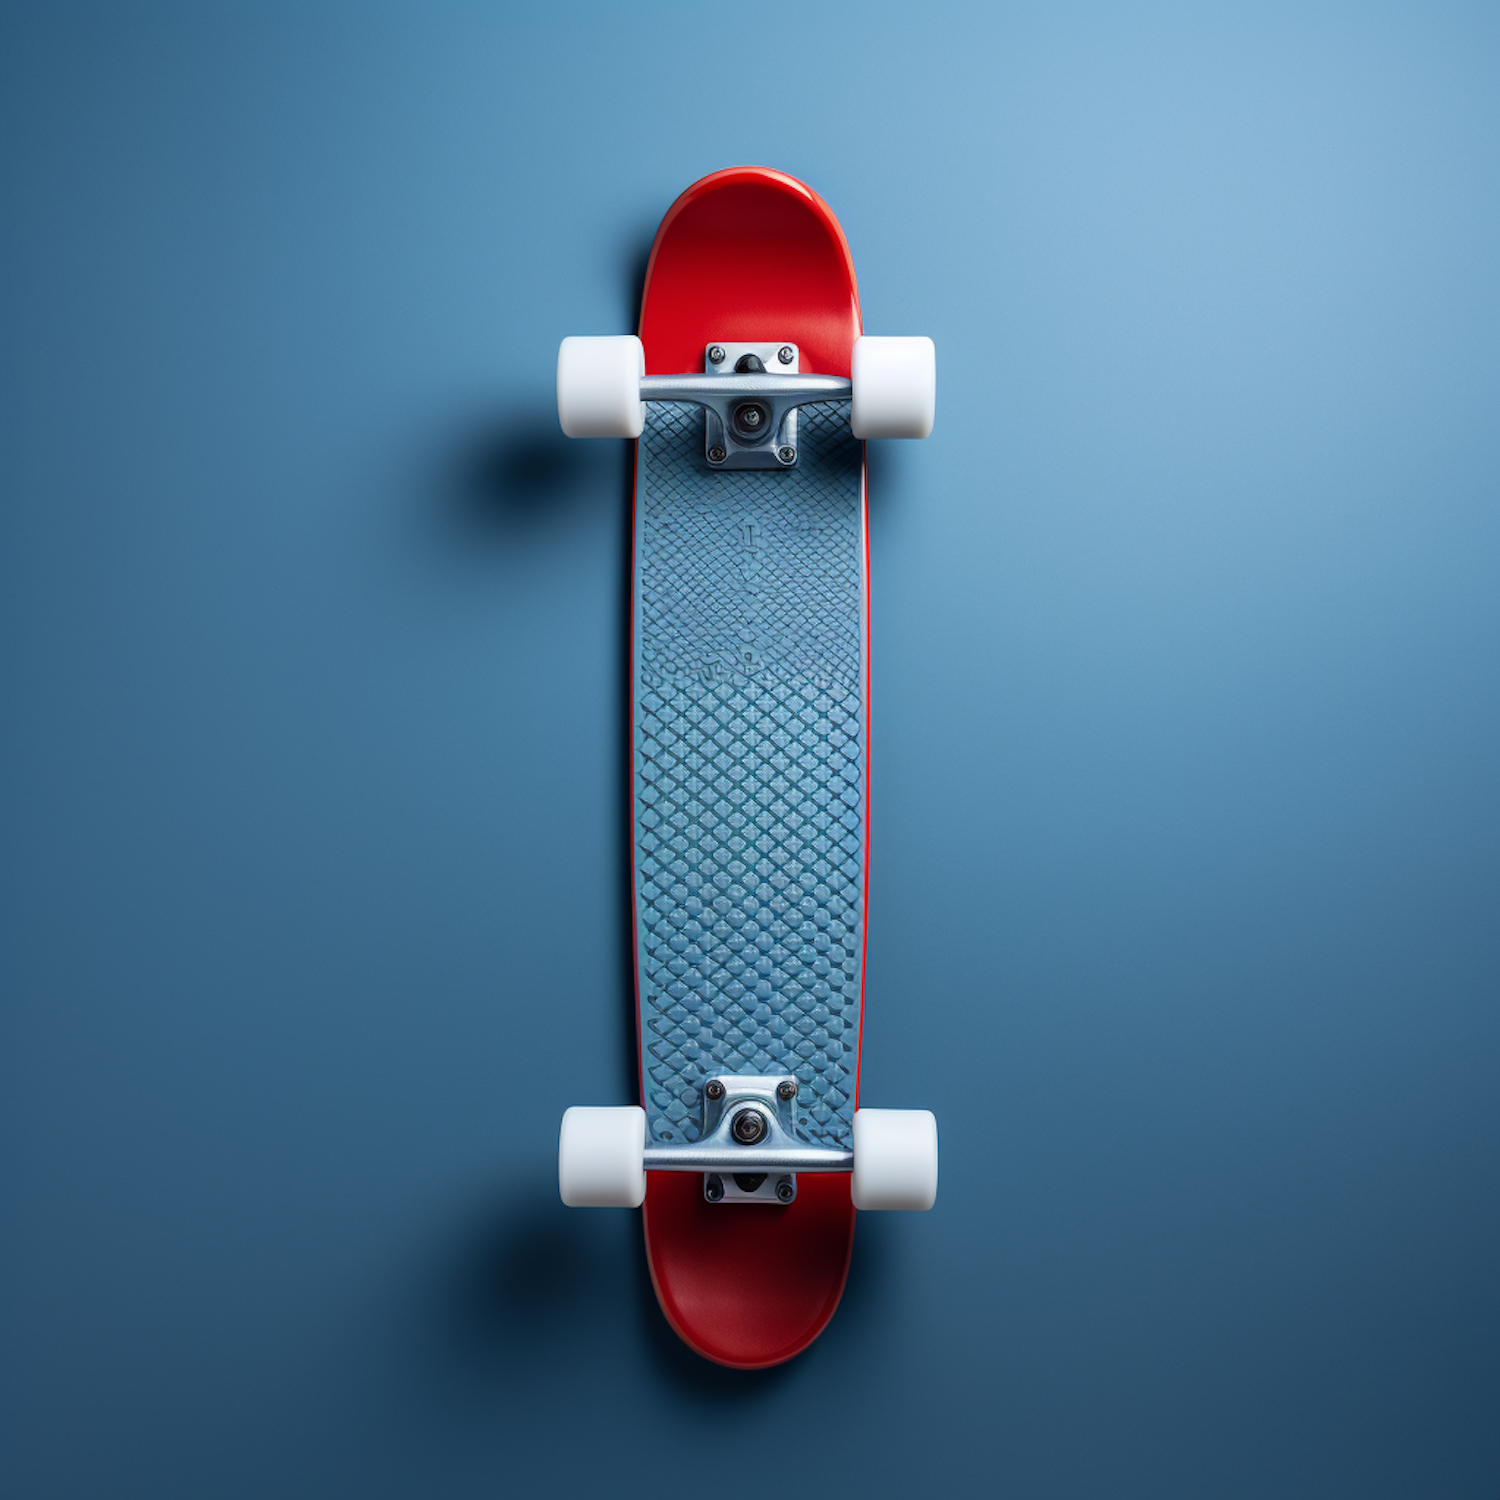 Crisp Red Skateboard on Serene Blue